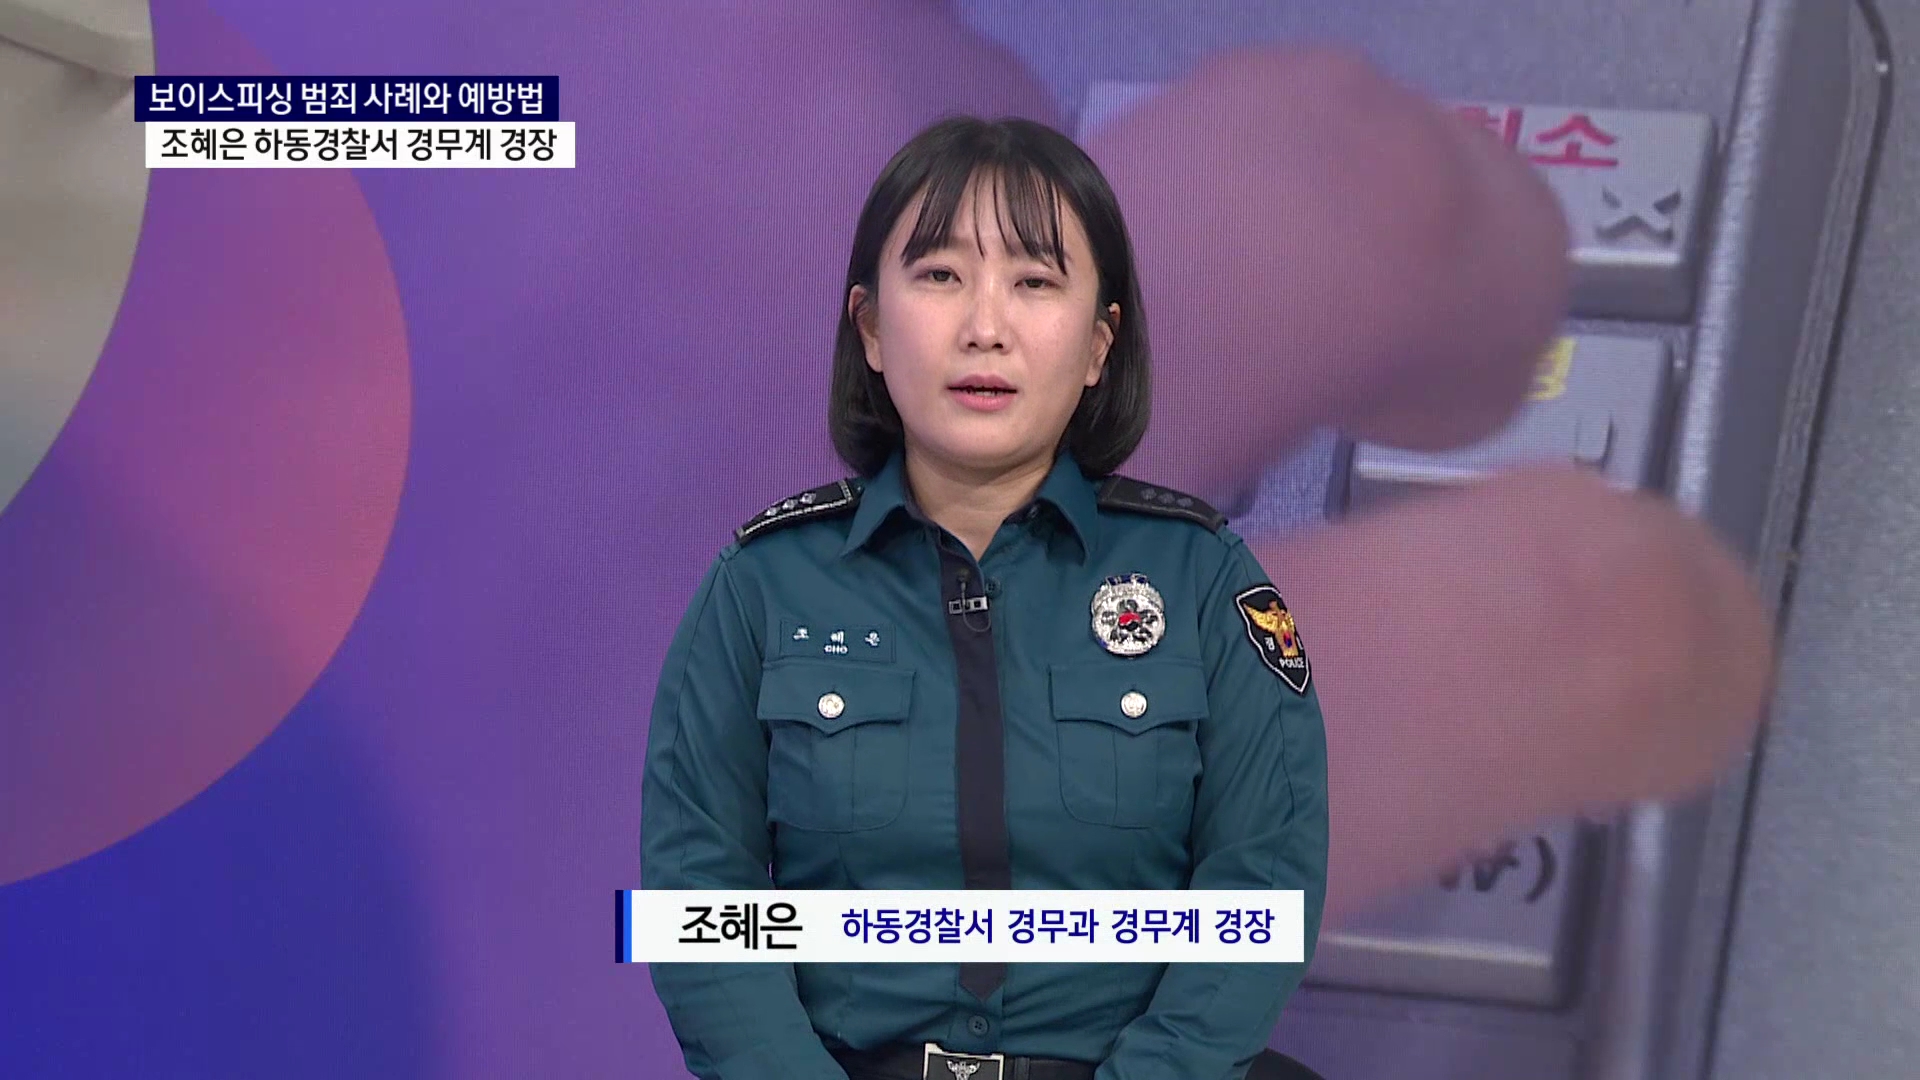 (스튜디오R) 조혜은 하동경찰서 경무과 경무계 경장 사진